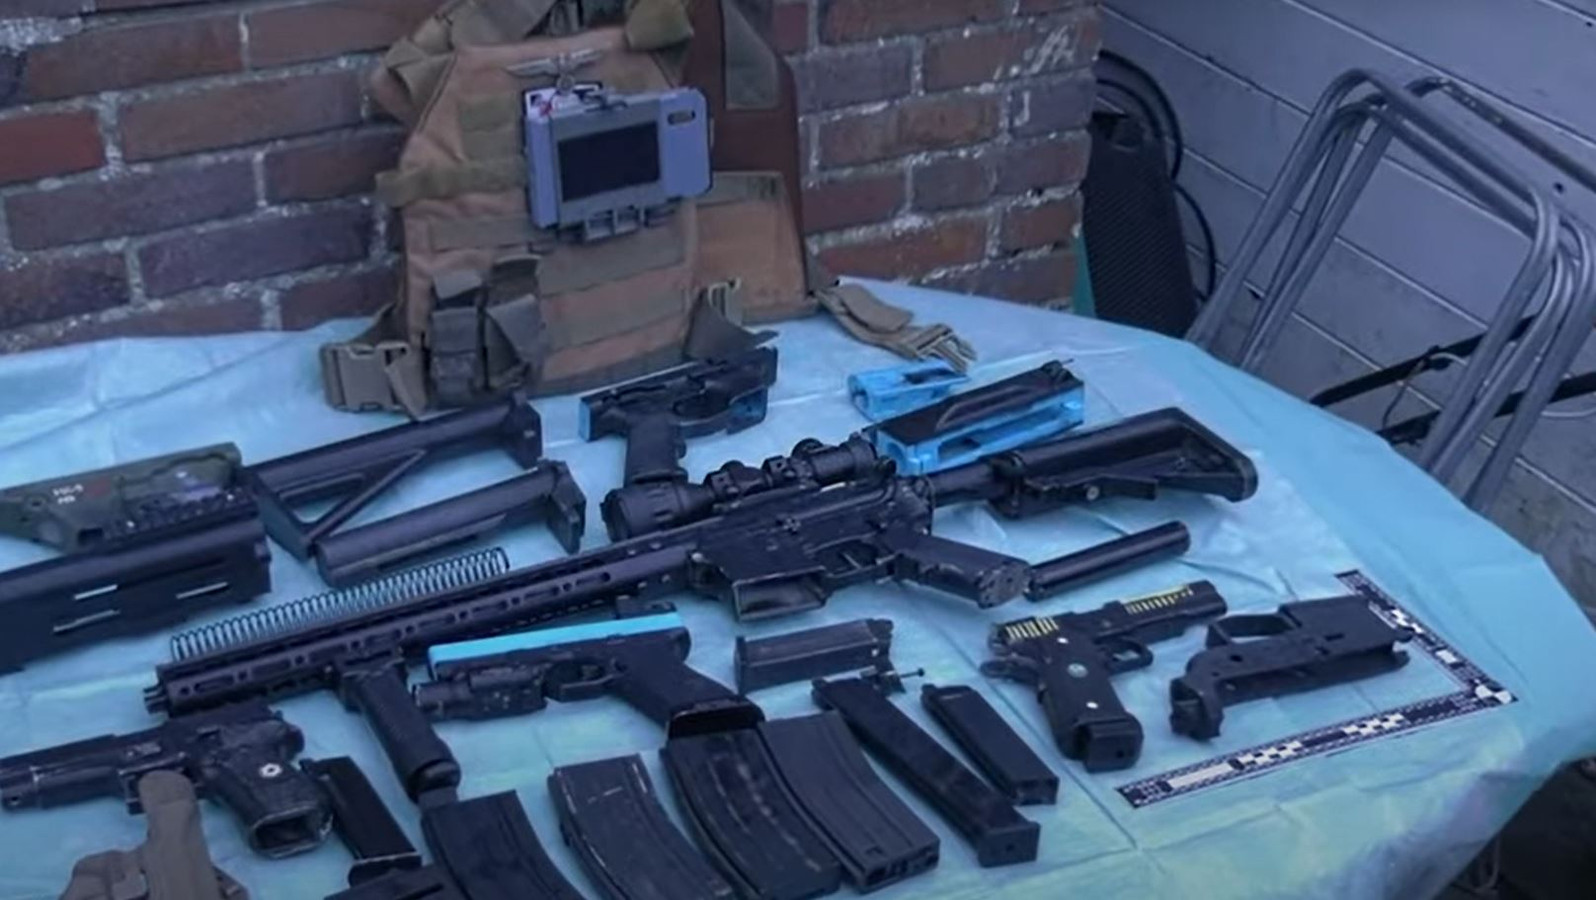 De politie ziet in binnen- en buitenland steeds vaker 3D-geprinte vuurwapens